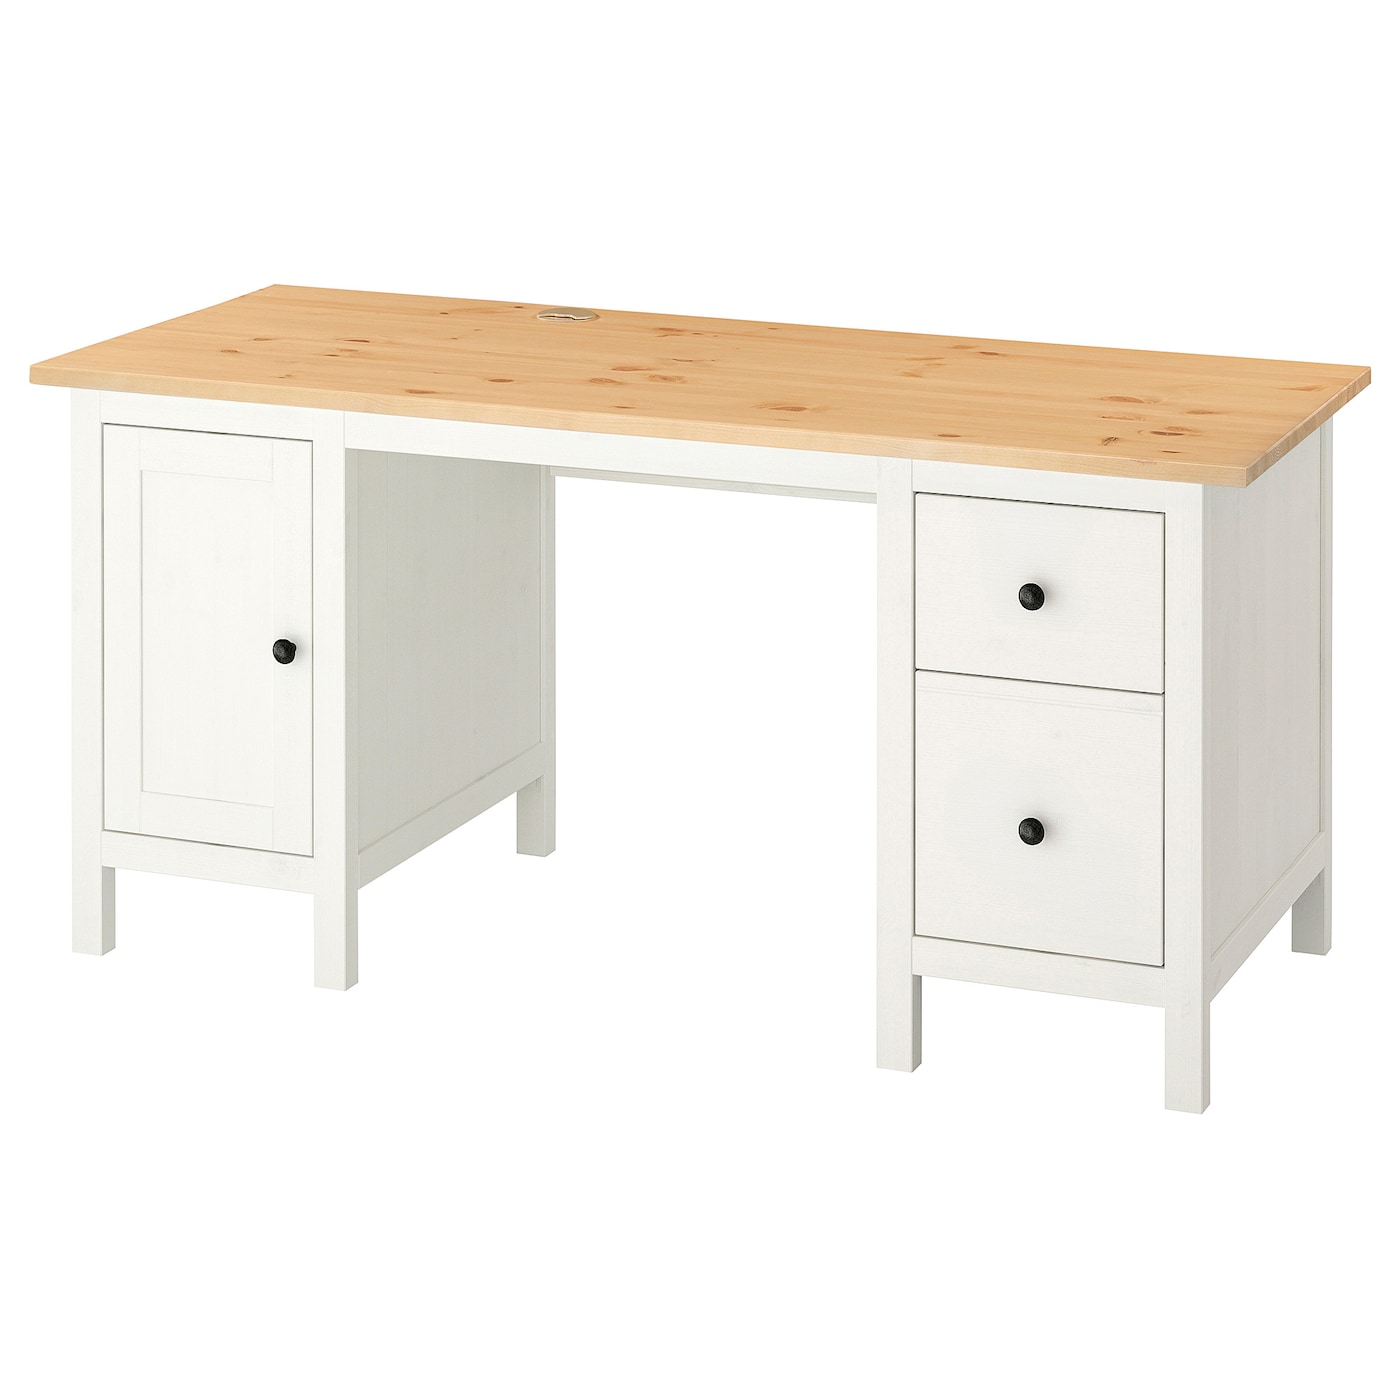 Письменный стол с ящиками - IKEA HEMNES/ХЕМНЭС ИКЕА, 155х65 см, белый/светло-коричневый